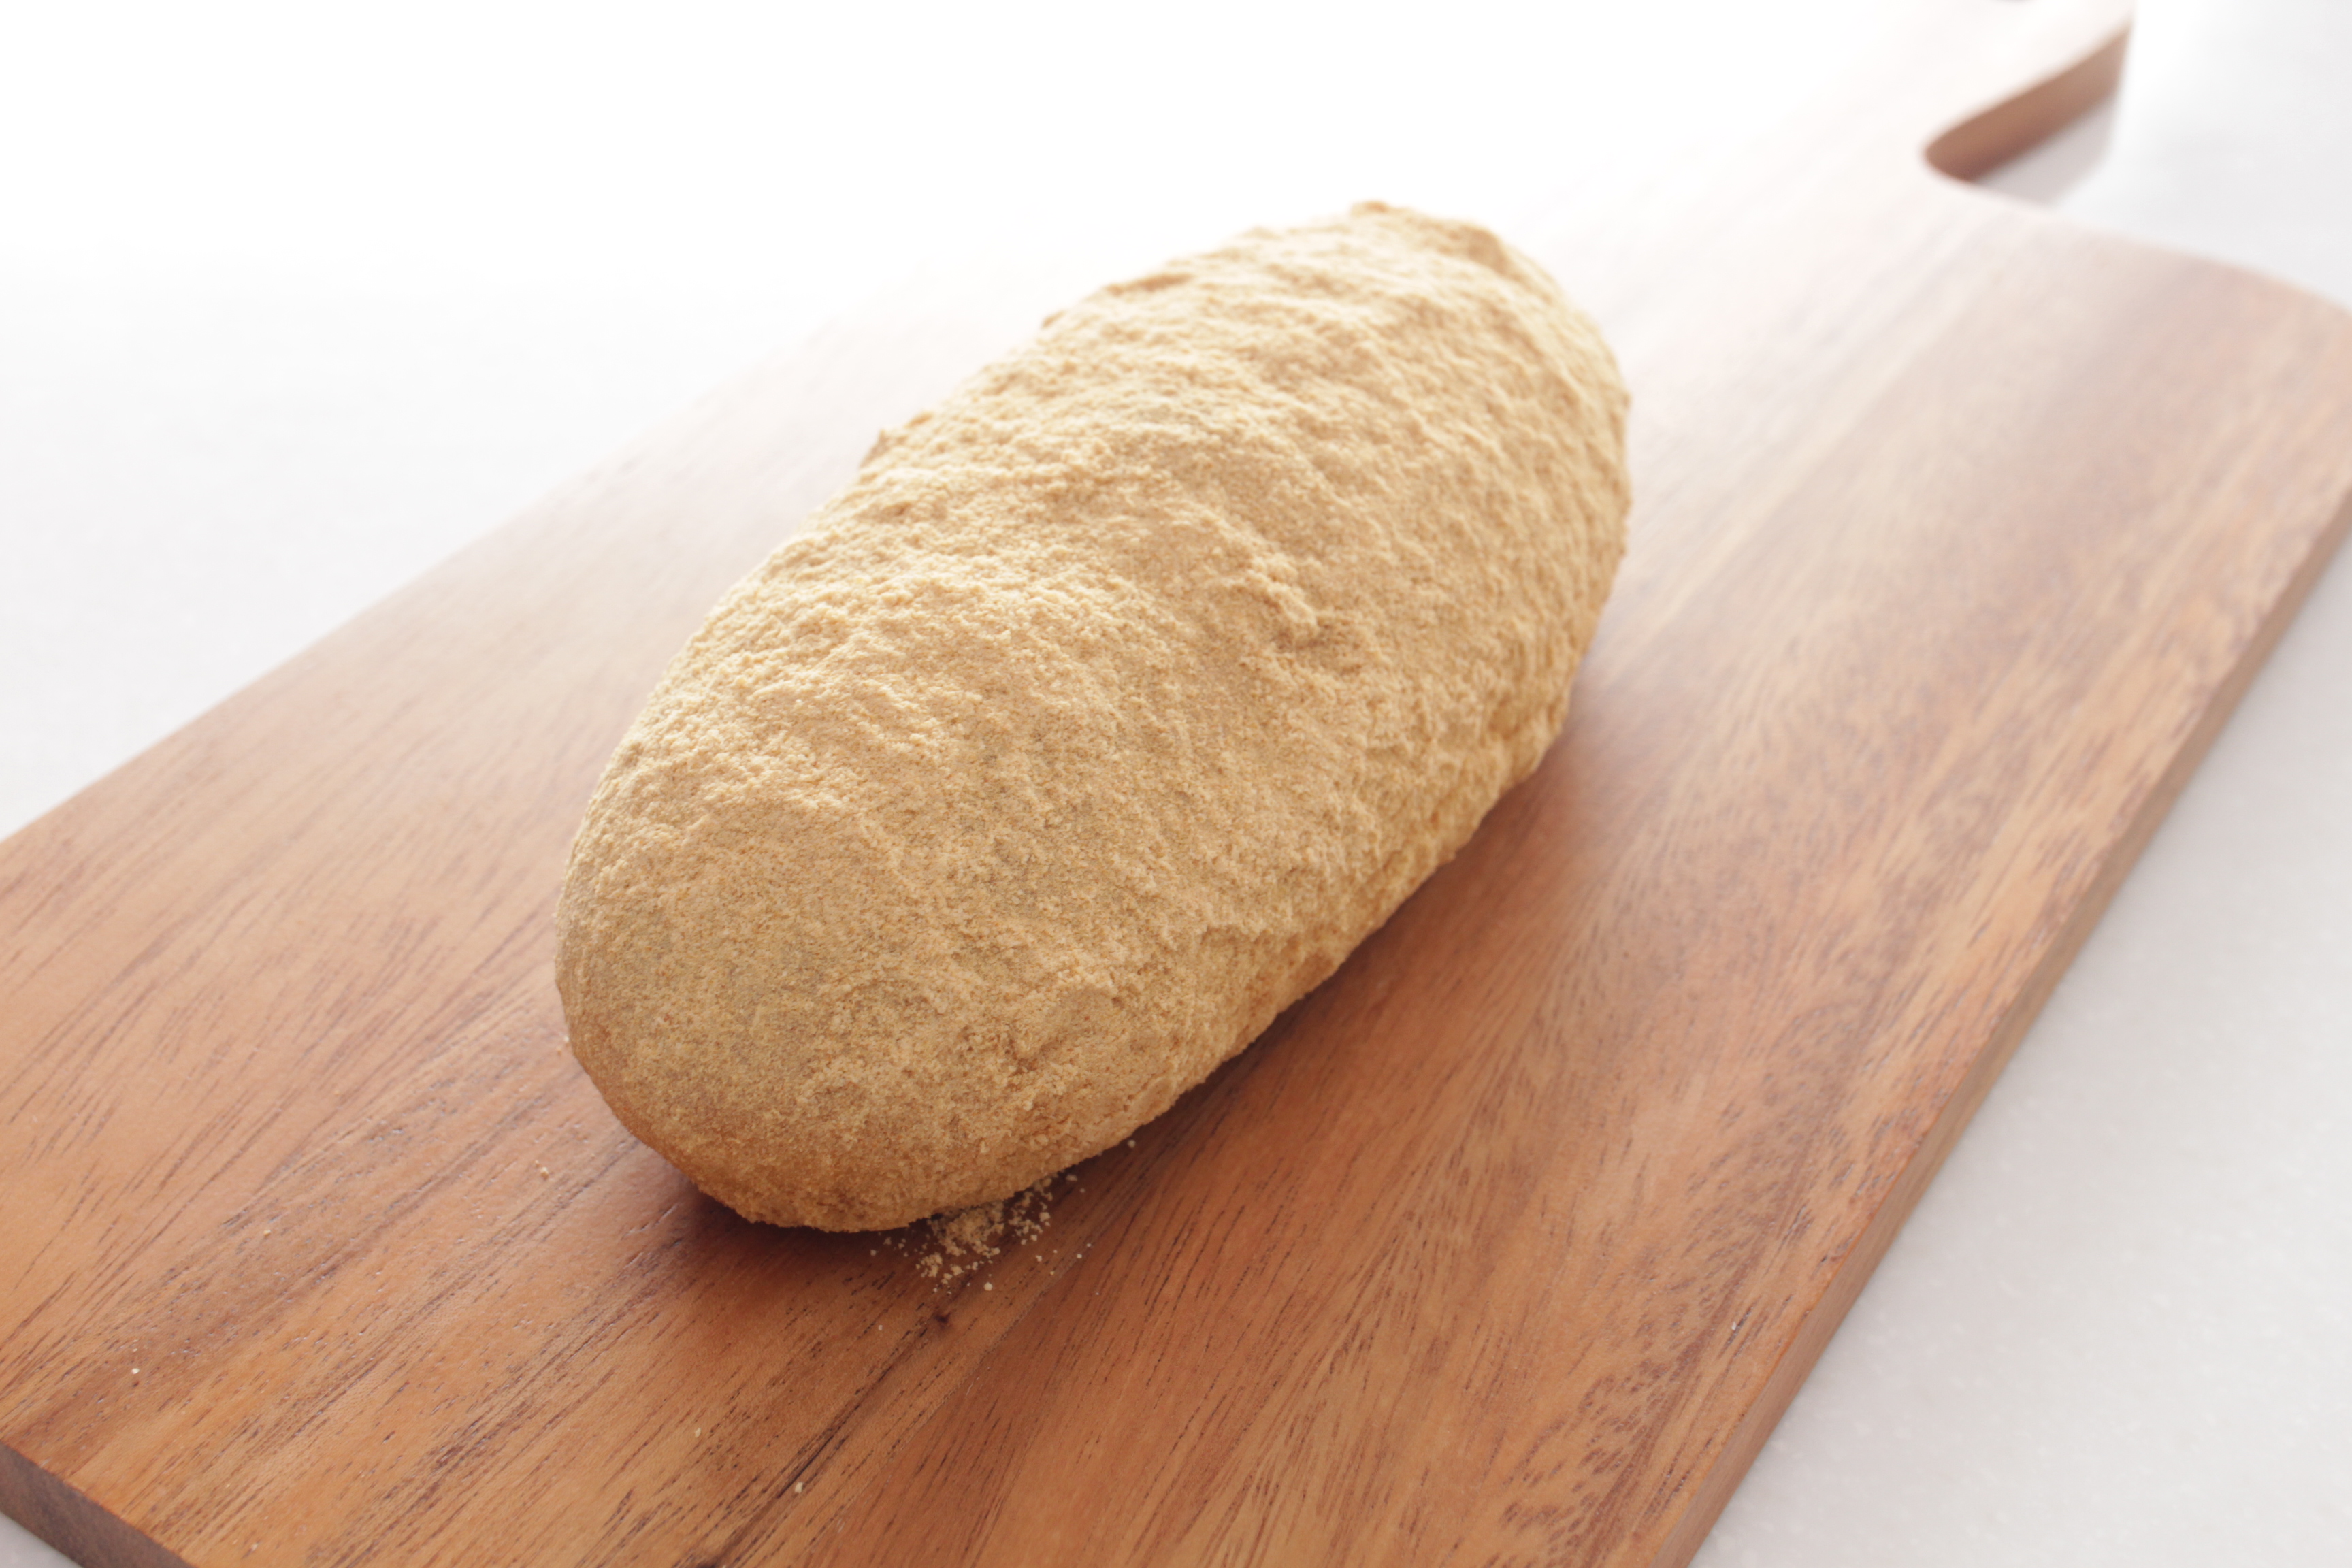 人気のきなこ揚げパンがさらに美味しくリニューアル Blog 三陸菓匠さいとう 総本店 さいとう製菓